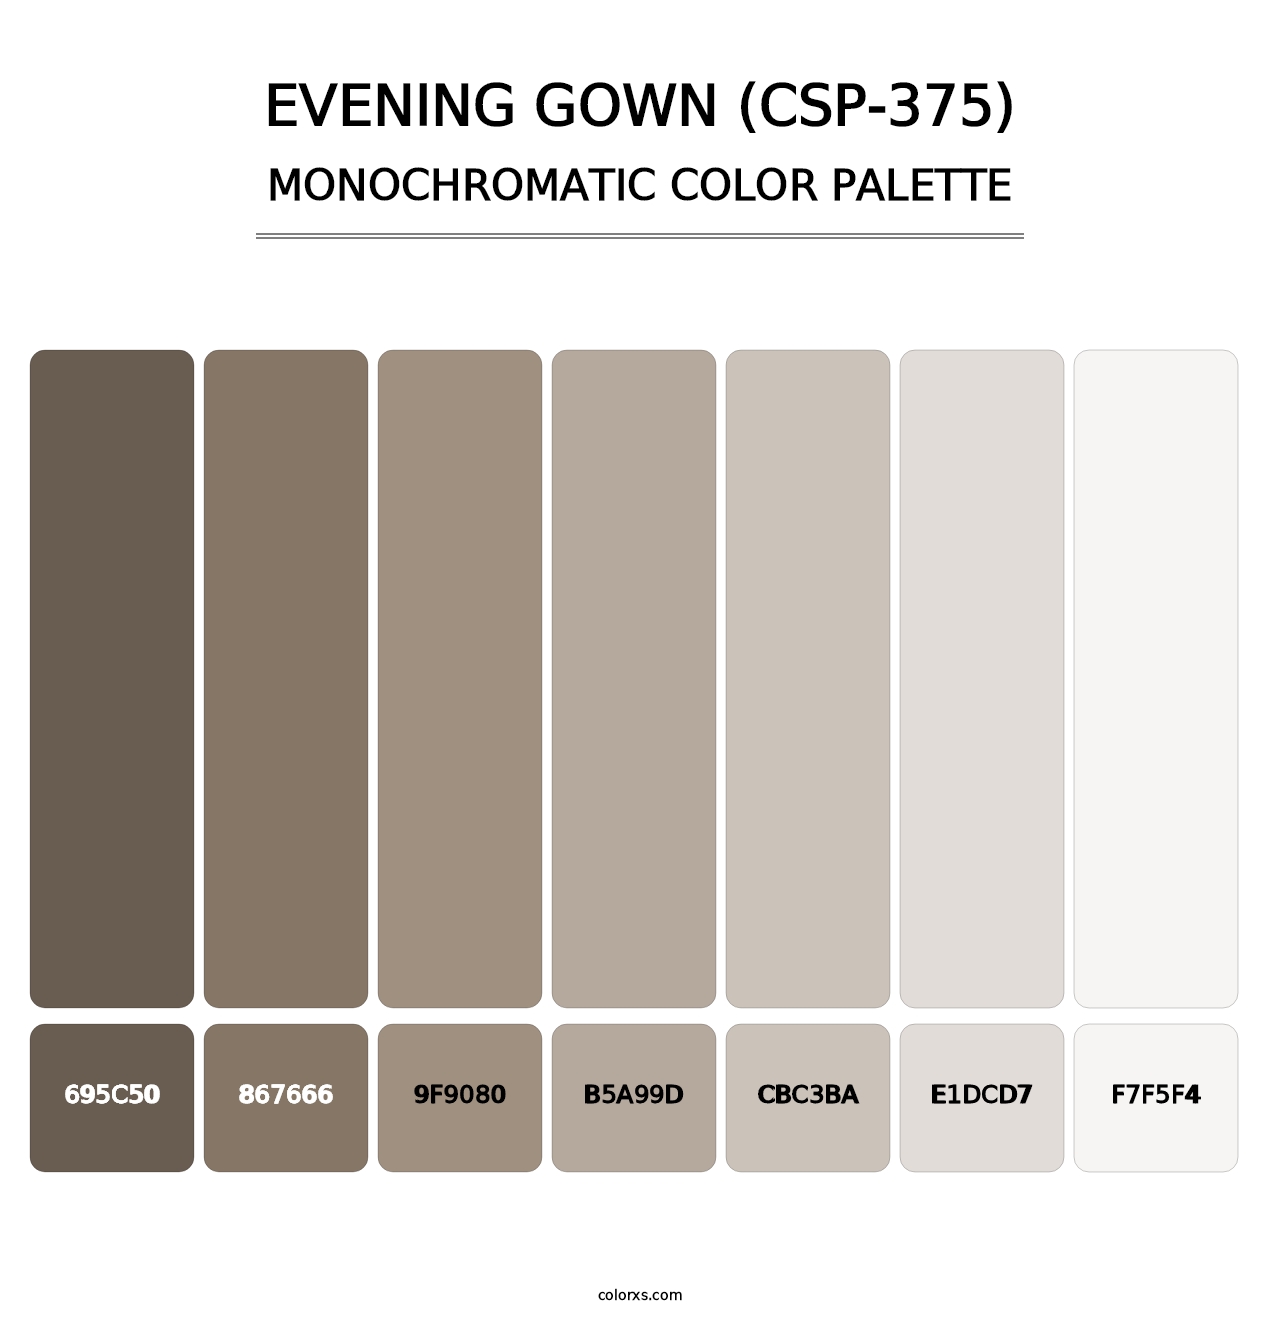 Evening Gown (CSP-375) - Monochromatic Color Palette